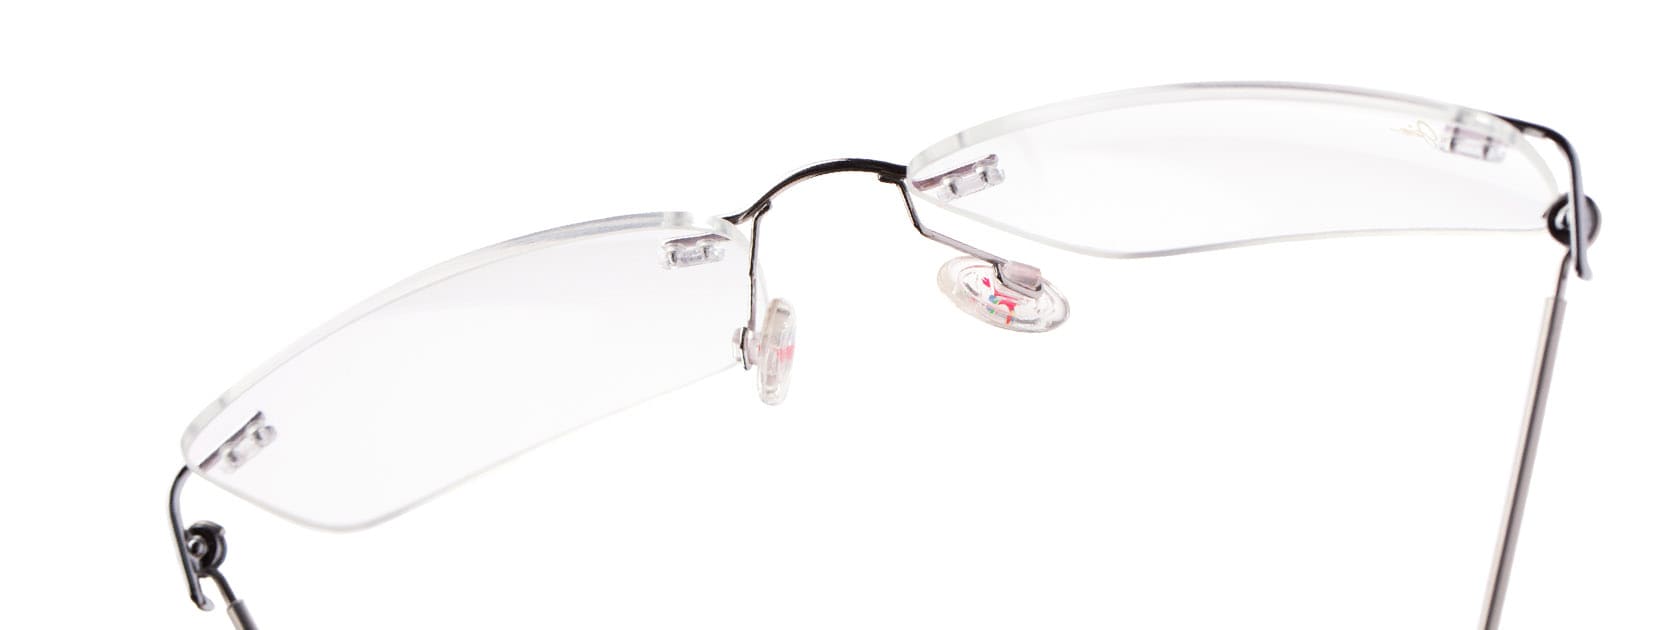 lunettes de vue cerclées présentées sur fond blanc